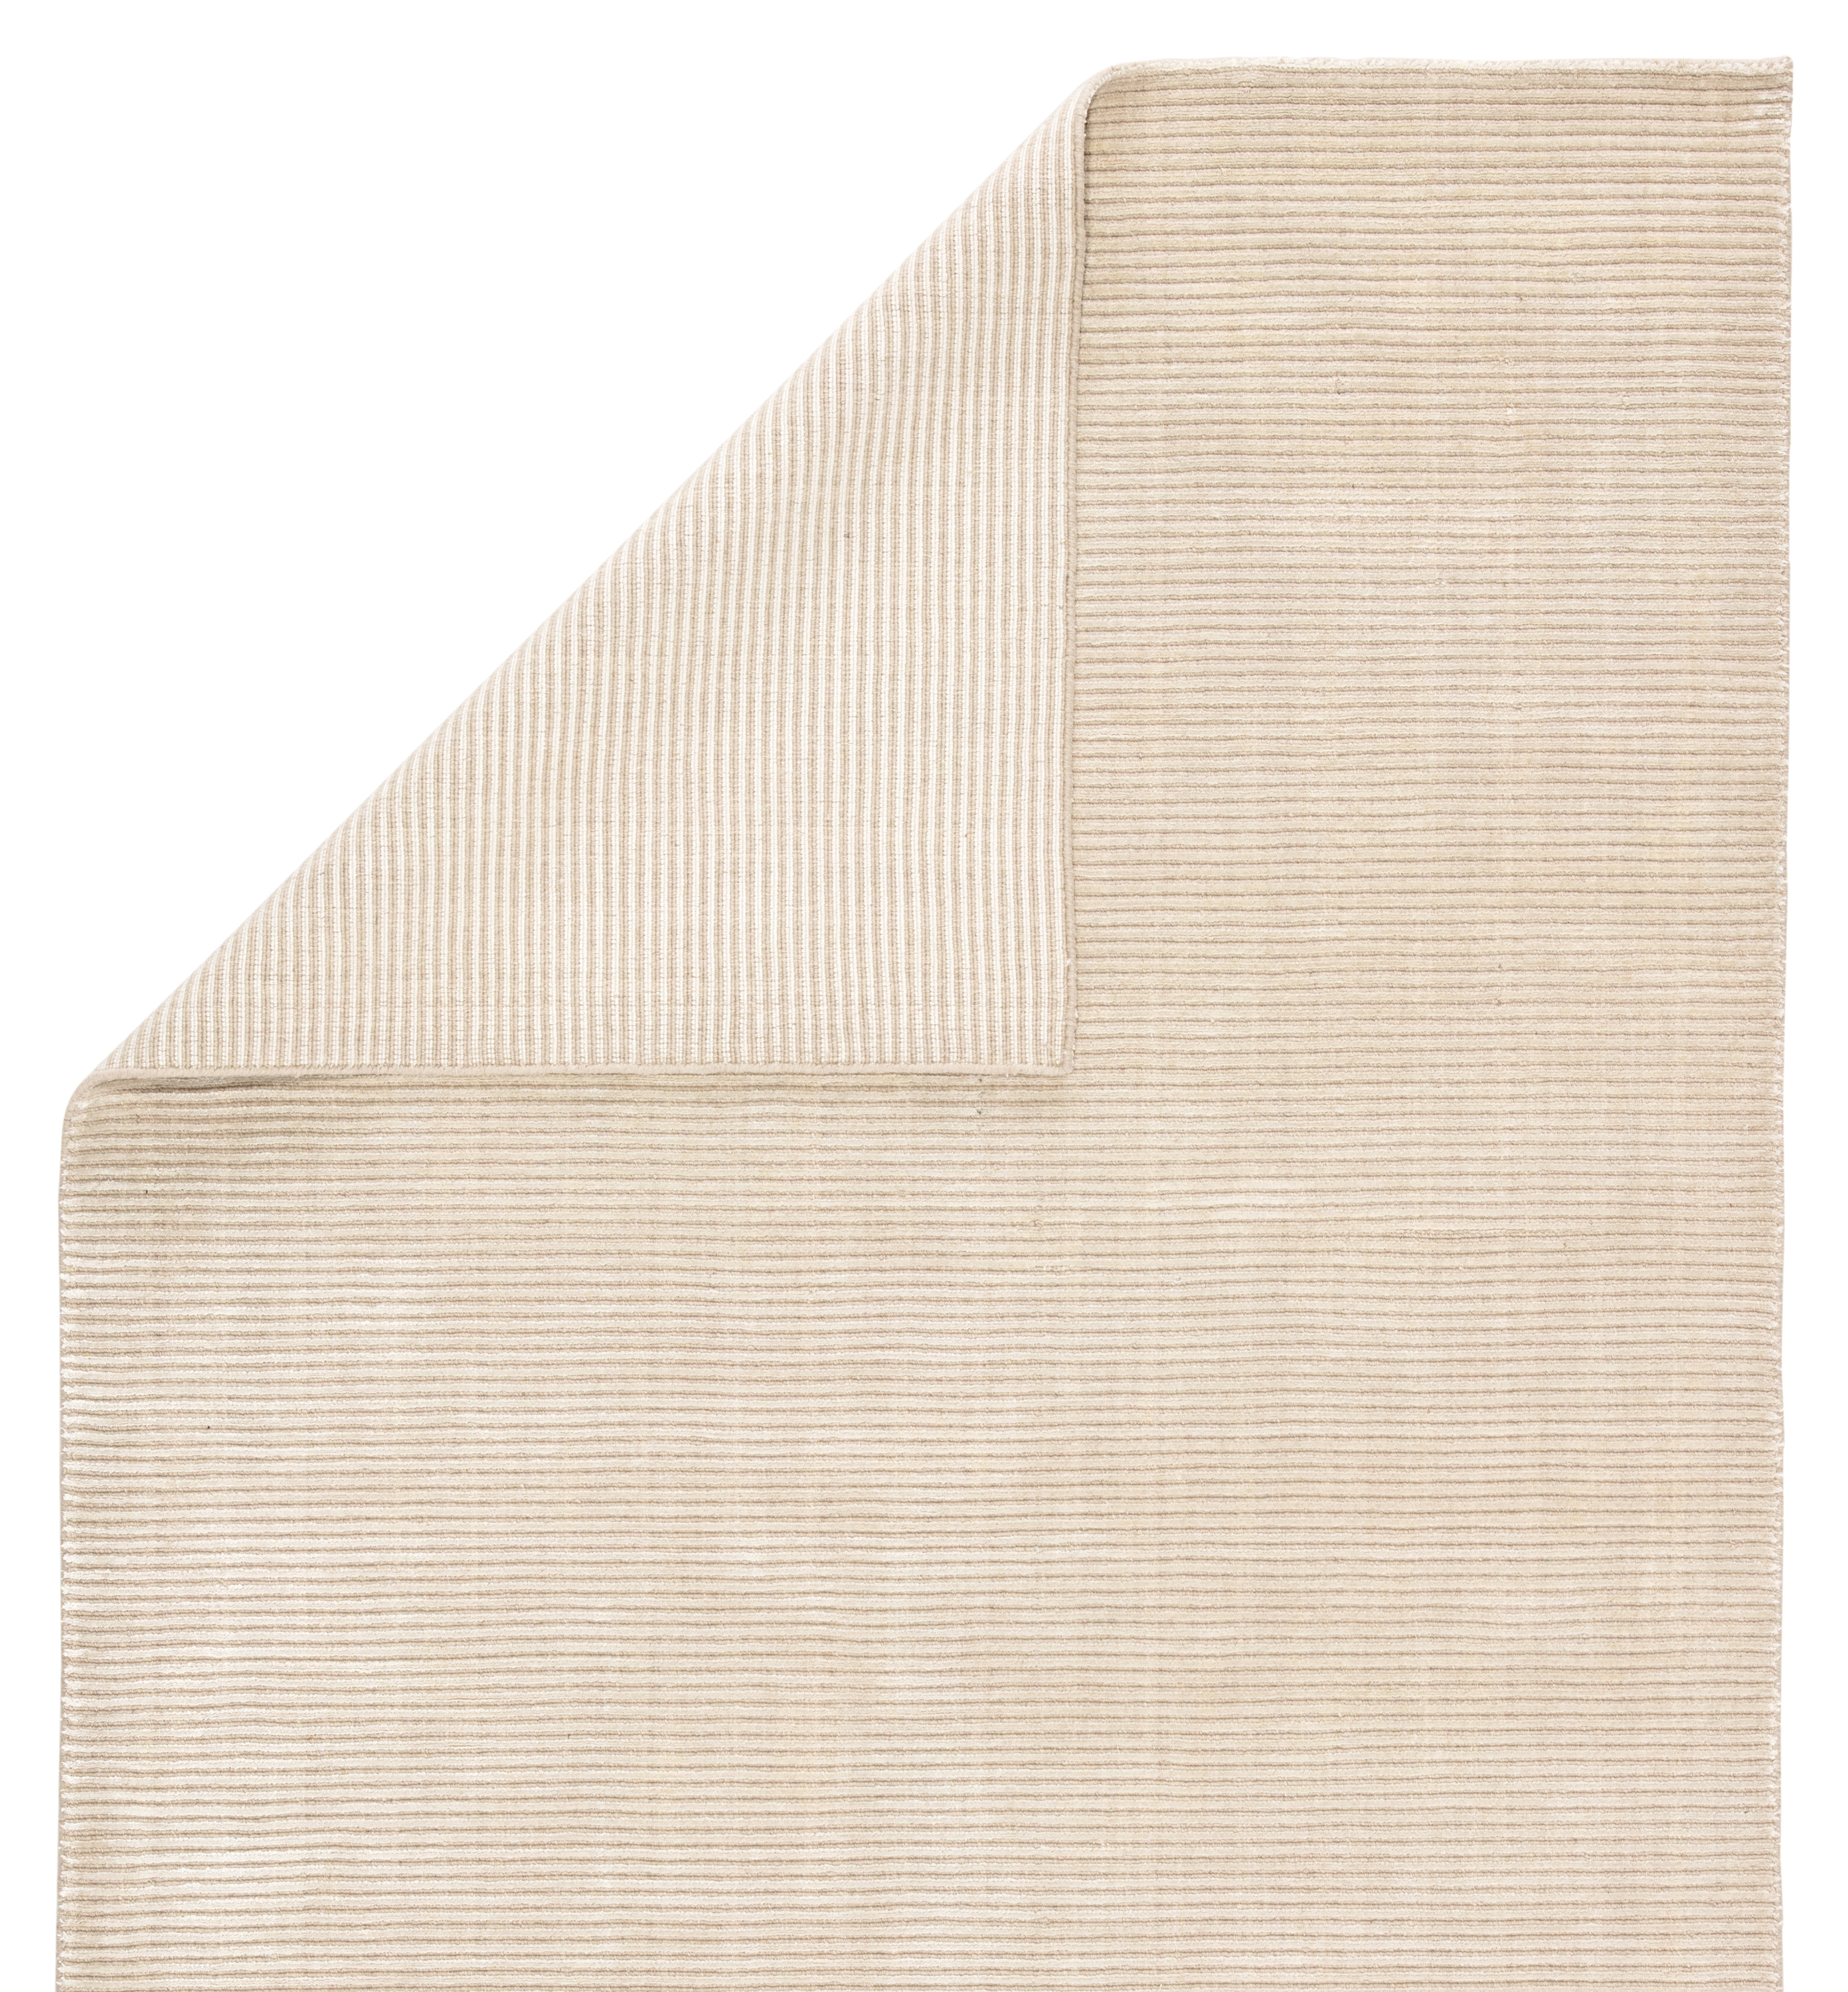 Basis Handmade Solid White Area Rug (9' X 12') - Image 2